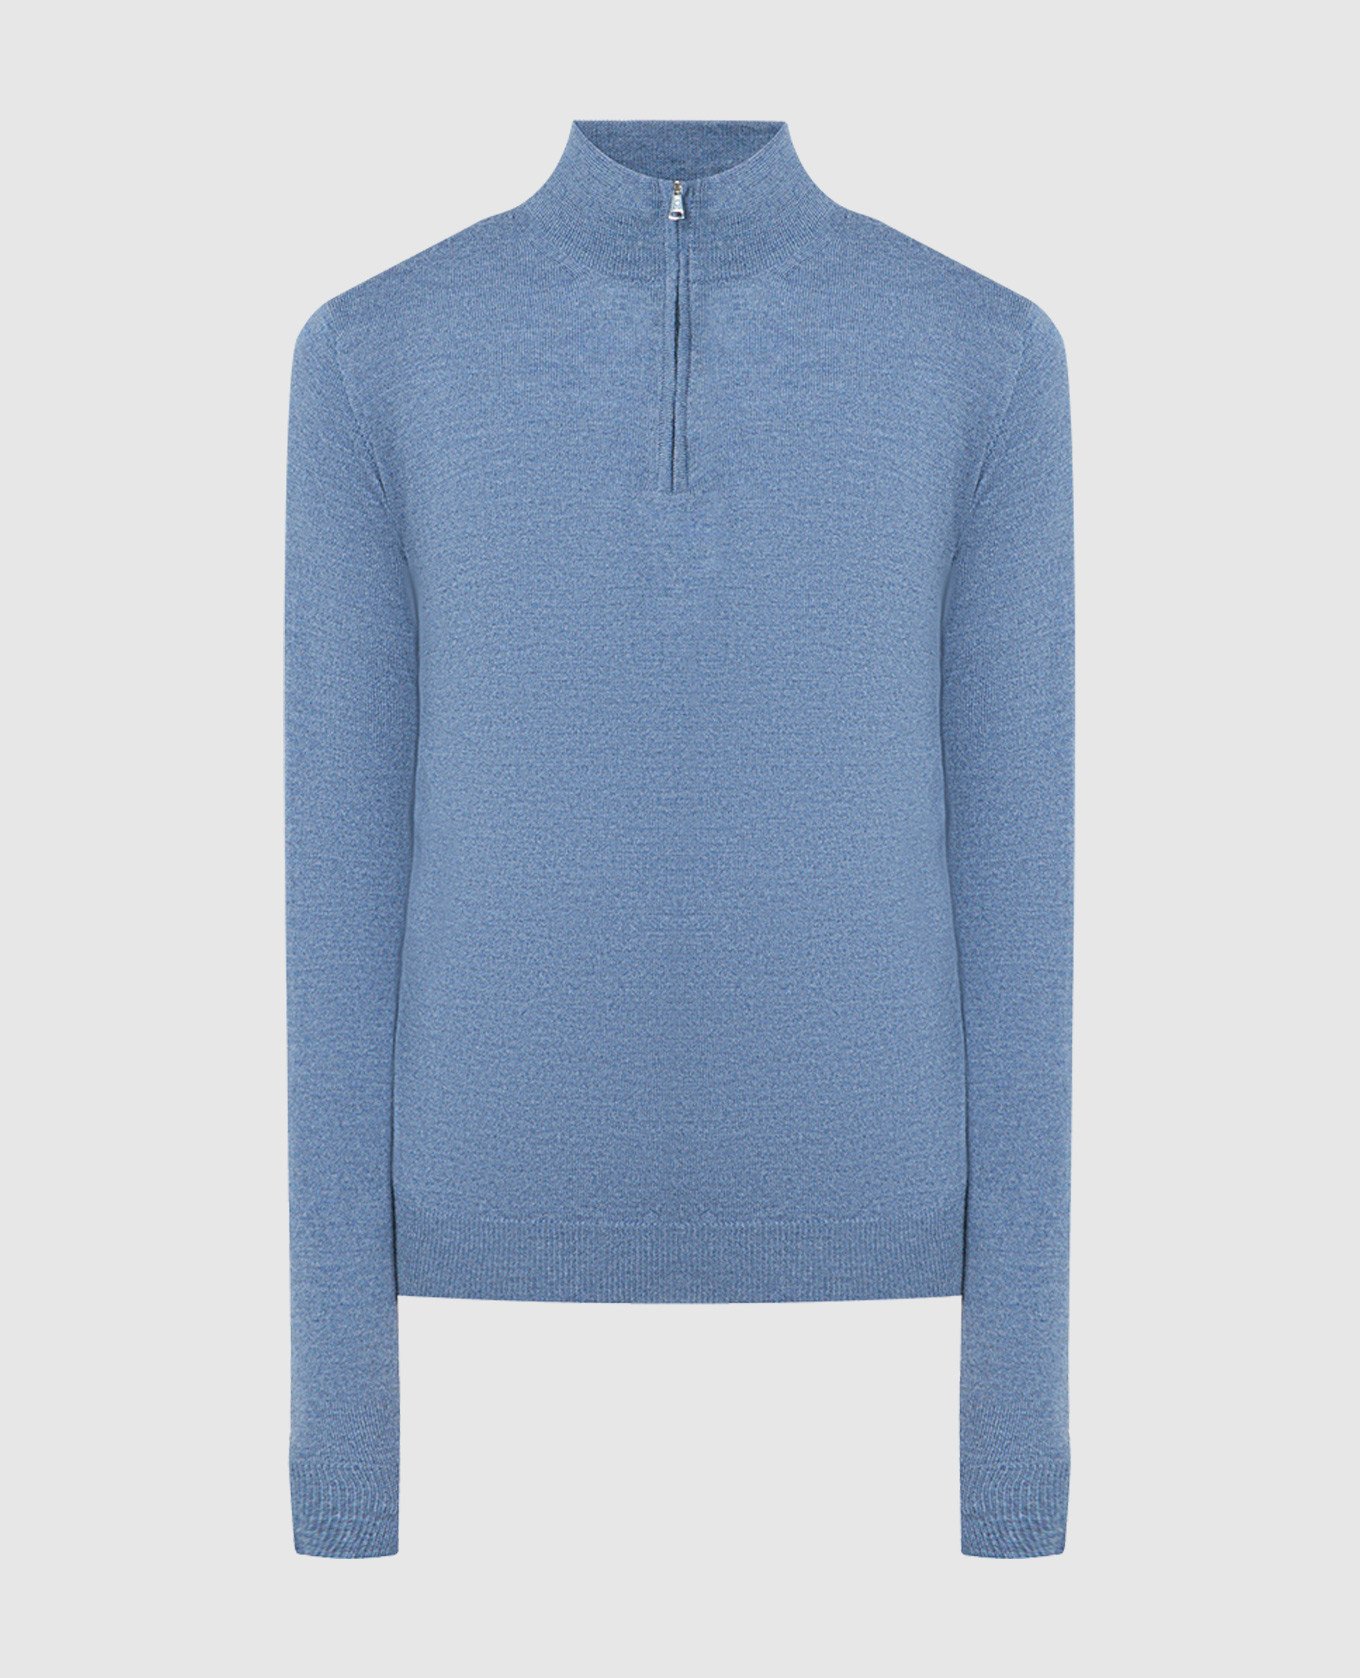 Blue woolen jumper